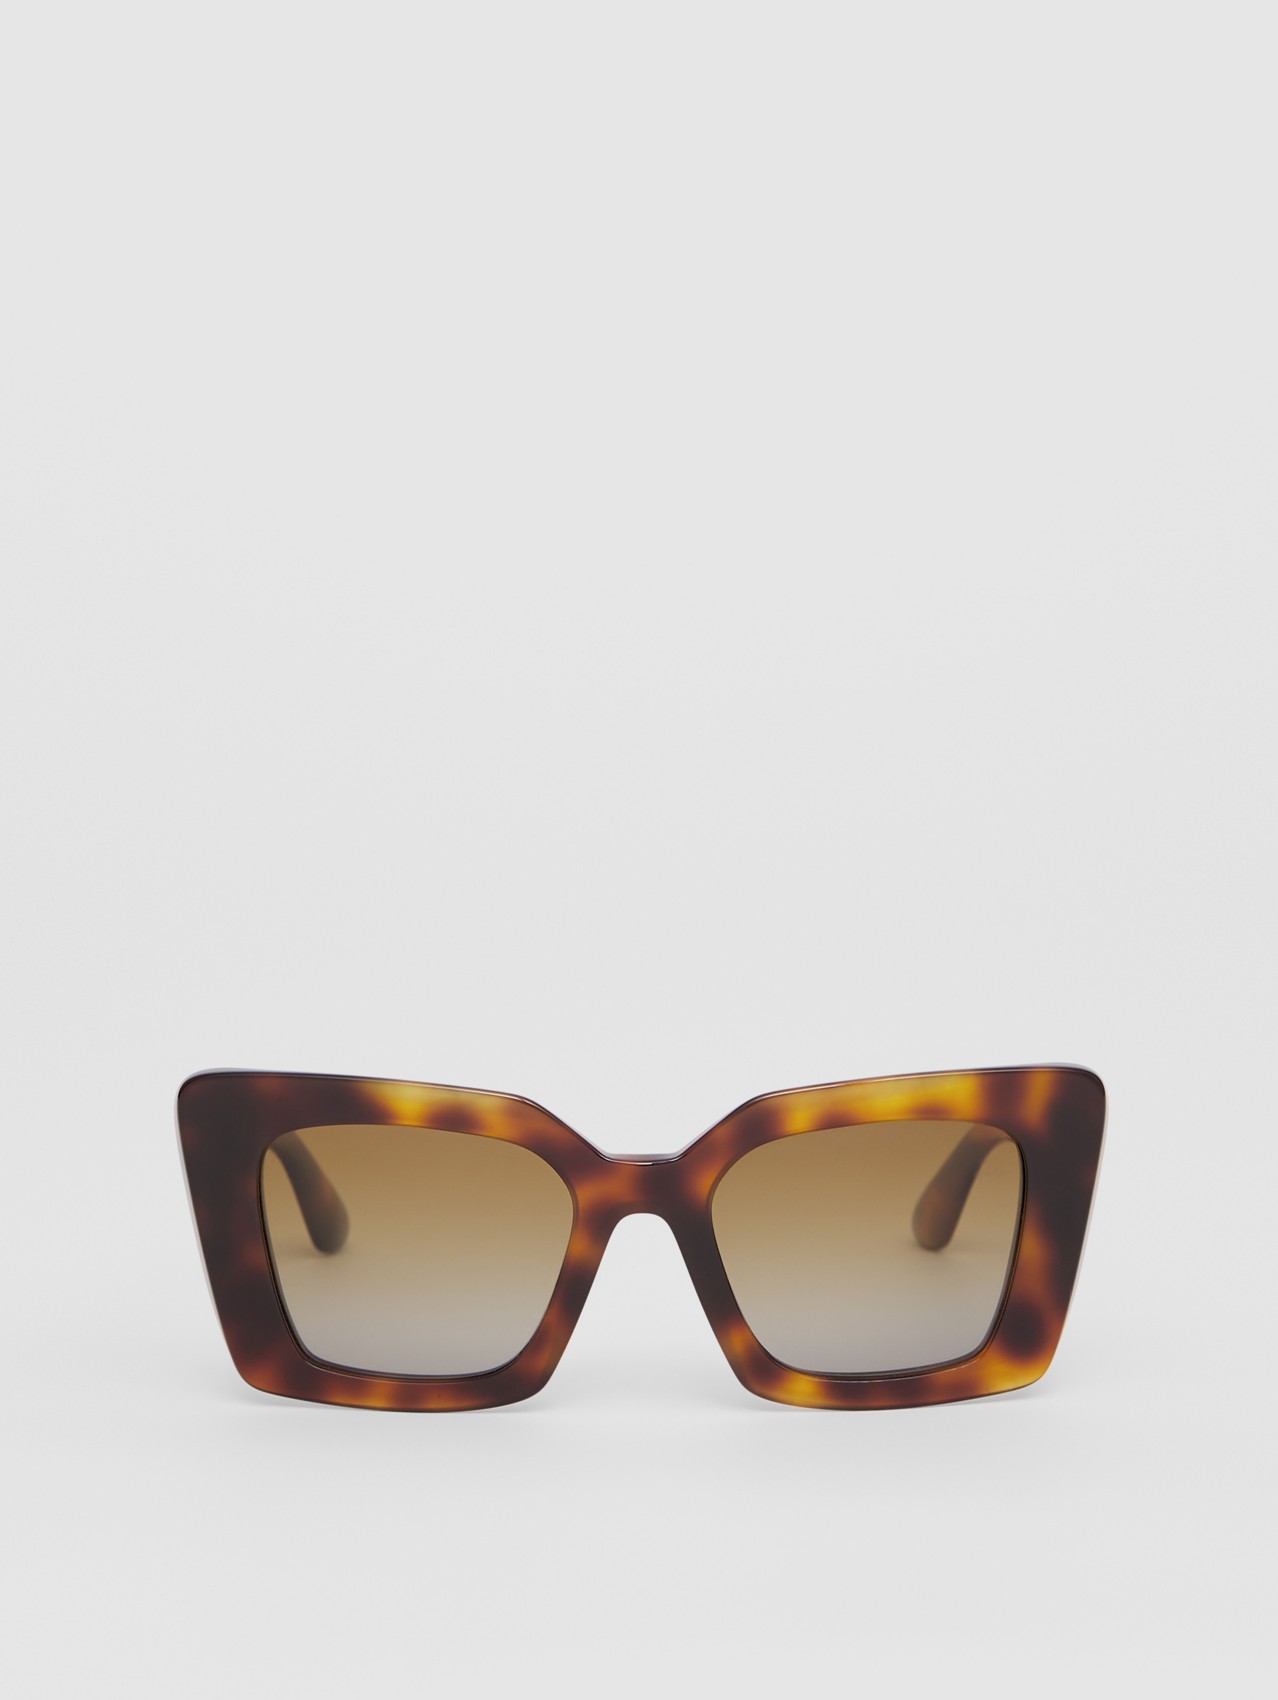 Monogram Motif Oversized Square Frame Sunglasses in Dark Tortoise Amber